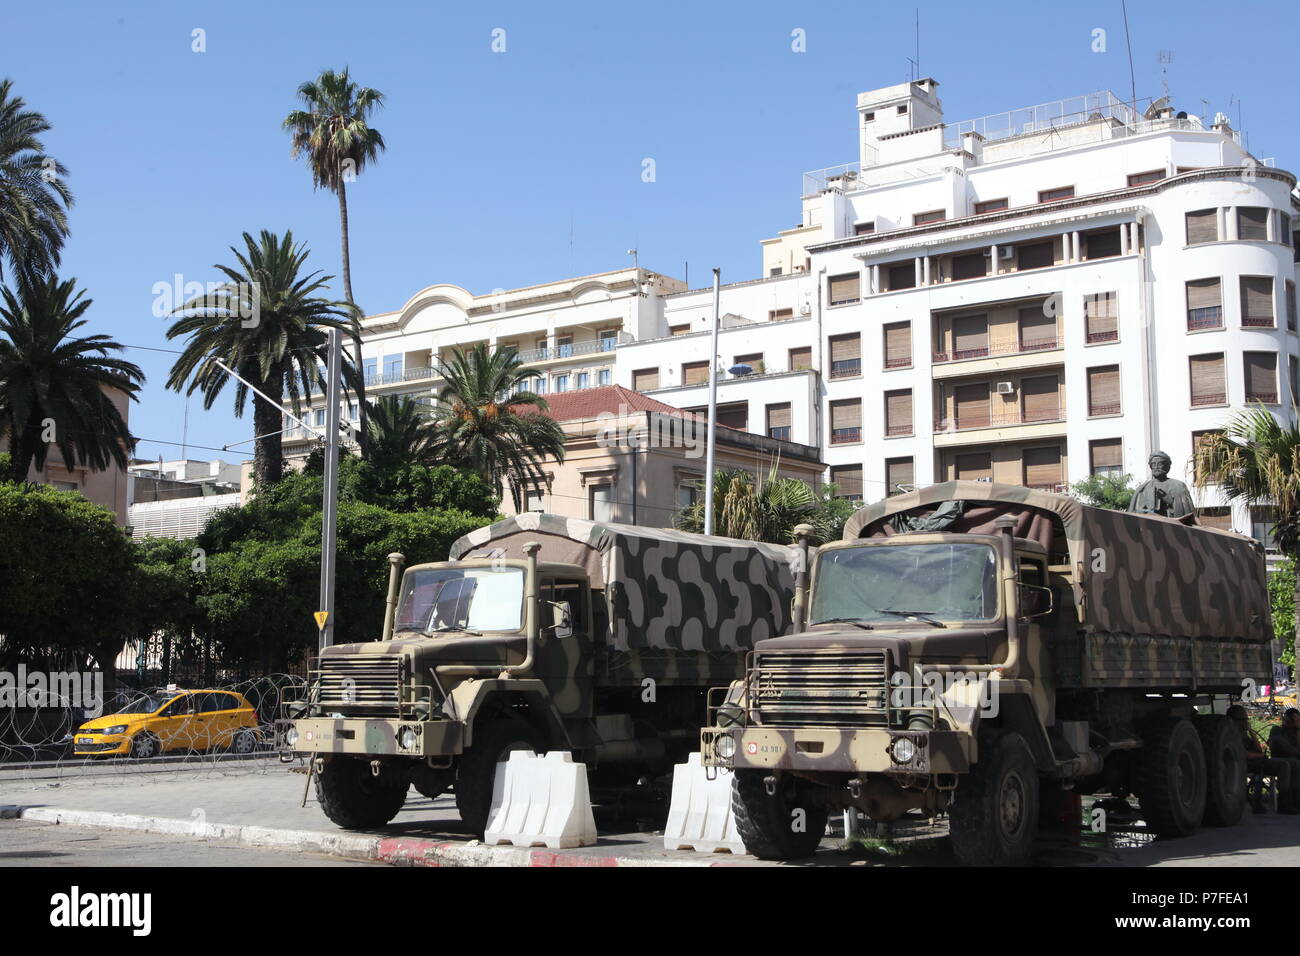 Les camions militaires dans le centre de Tunis, Tunisie, une vue typique de l'Afrique du Nord et M/l'Est, là où la lutte pour le pouvoir peut engendrer en affrontement armé Banque D'Images